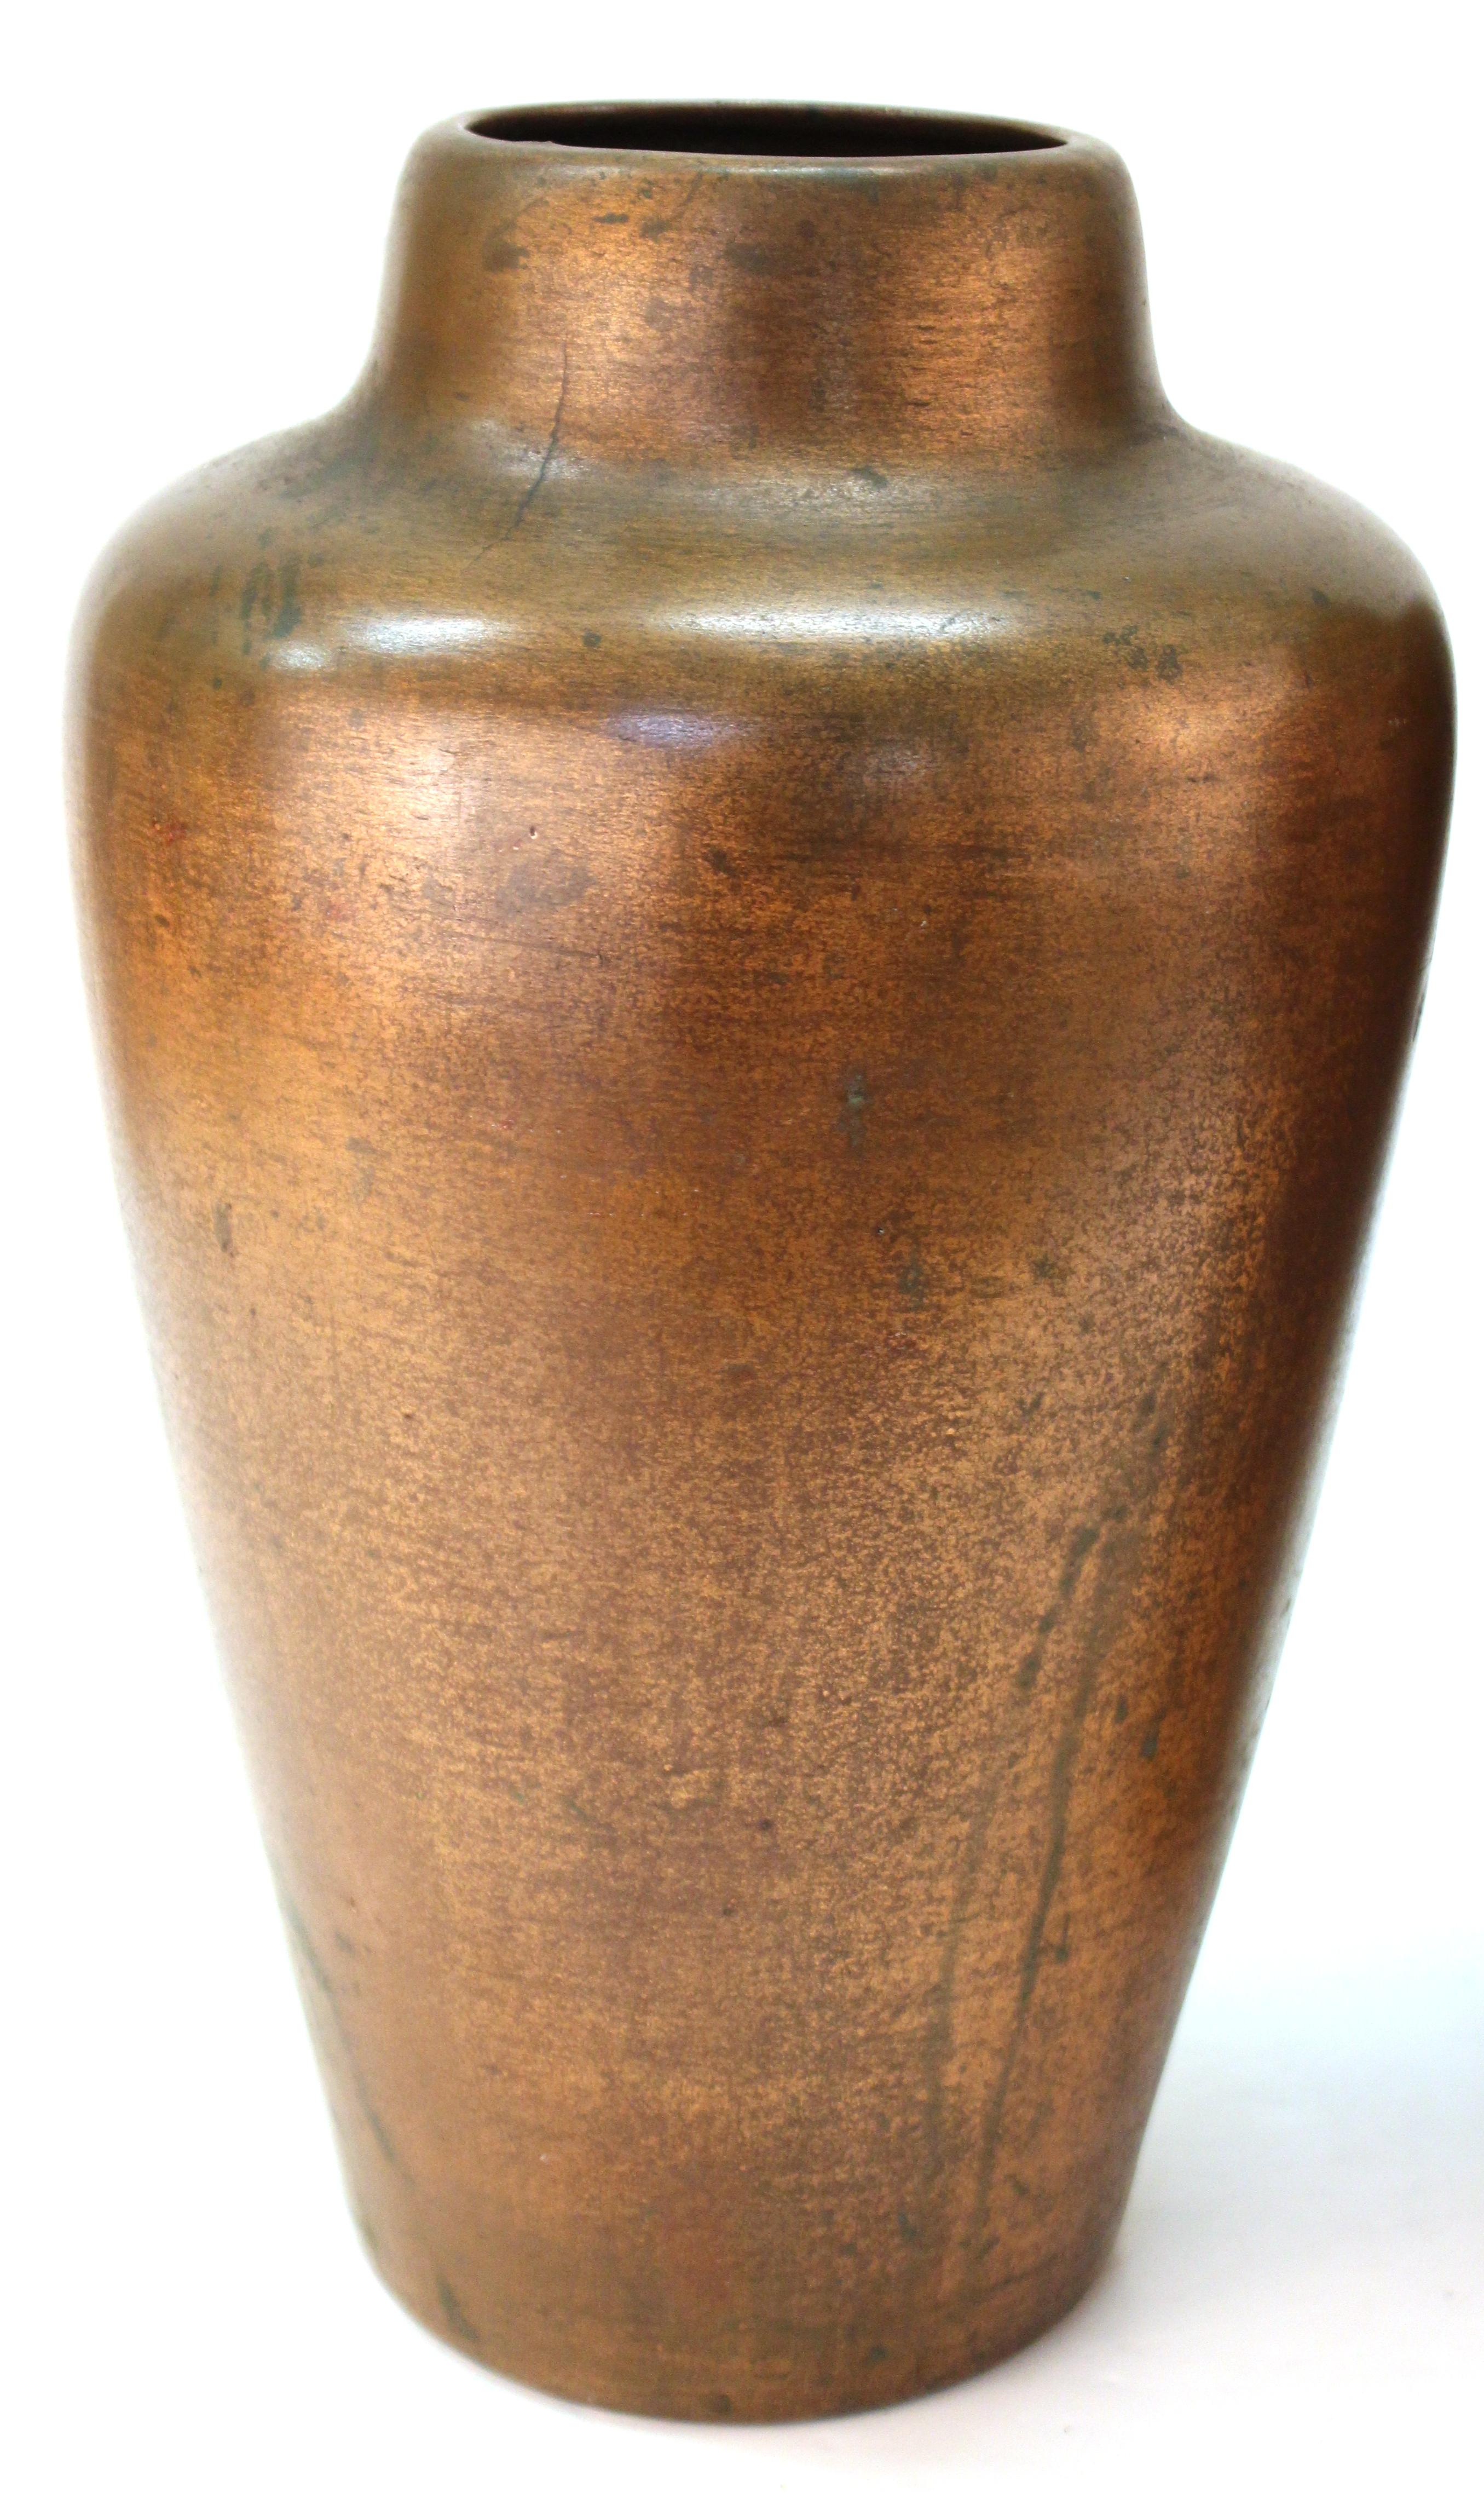 Clewell American Arts & Kunsthandwerkliche Vasen aus kupferhaltiger Keramik (amerikanisch)